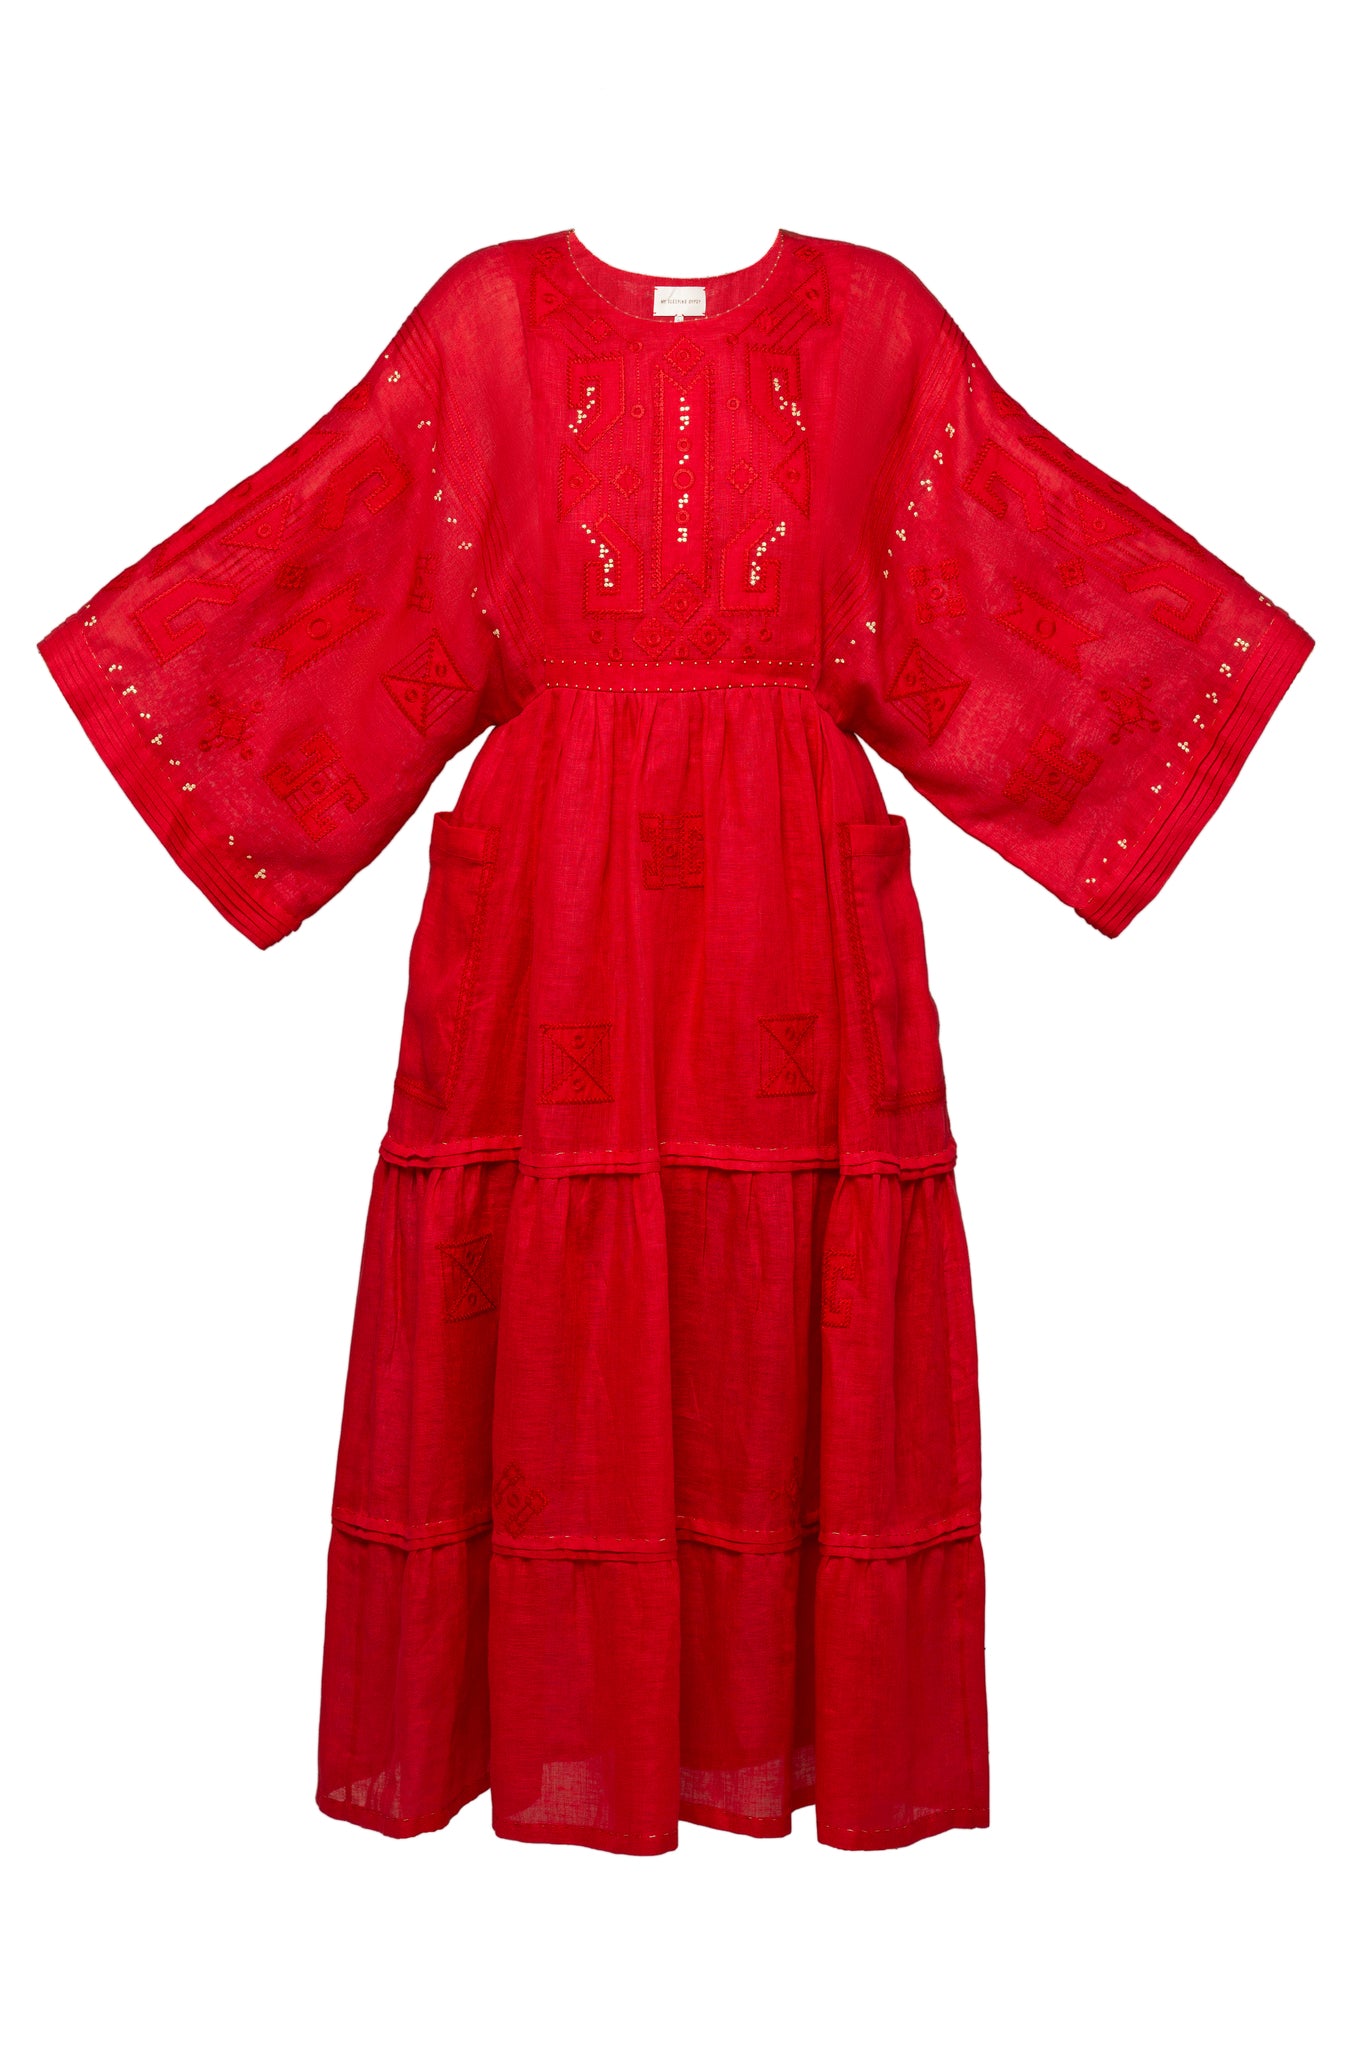 BRAILLE LONG DRESS IN RED My Sleeping Gypsy